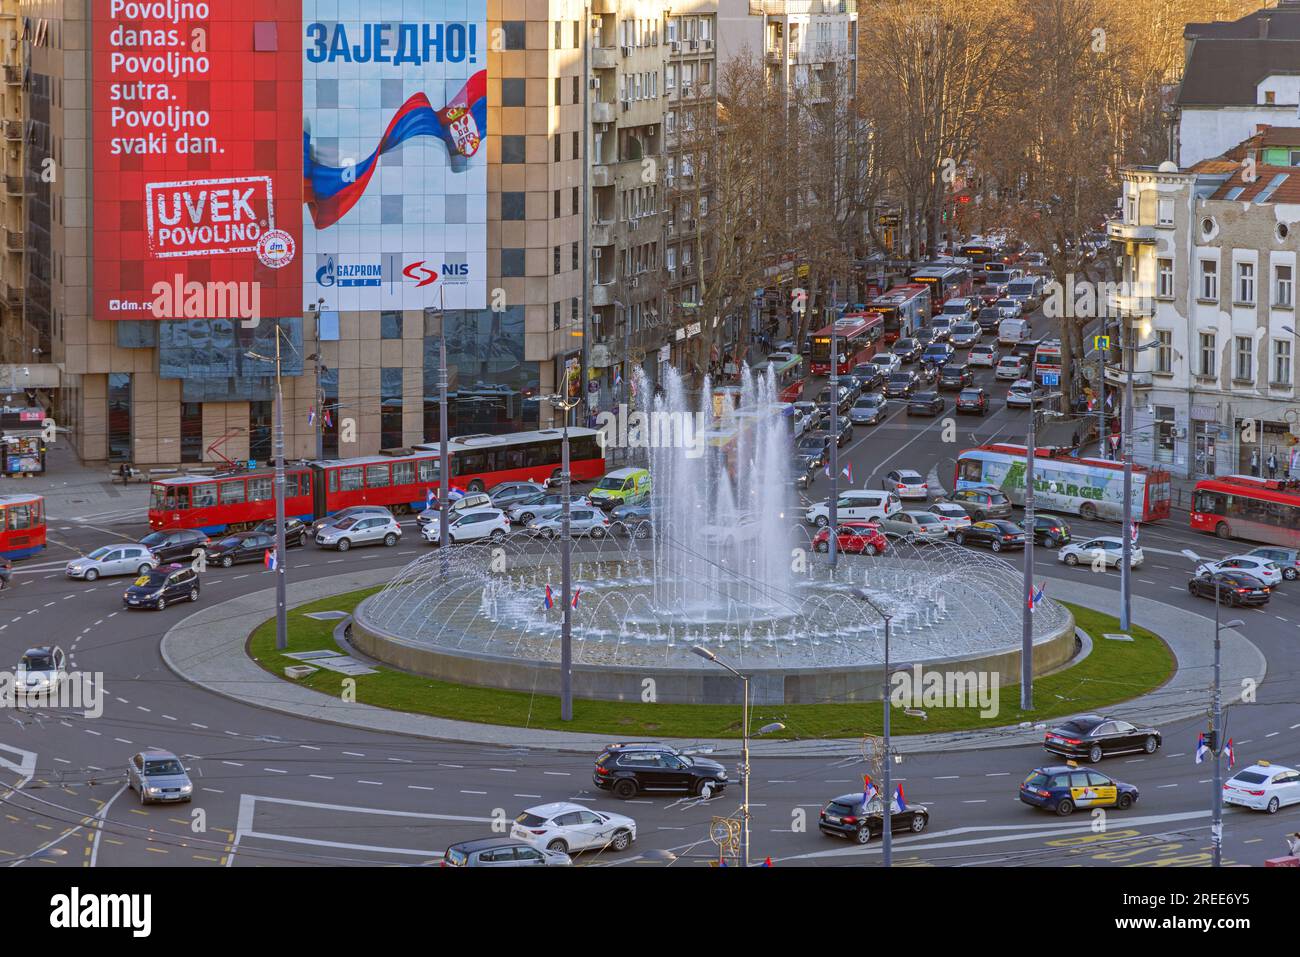 Belgrad, Serbien - 18. Februar 2022: Luftaufnahme des Slaviaplatzes am Kreisverkehr Wasserfontäne mit Staus am kalten Winternachmittag. Stockfoto